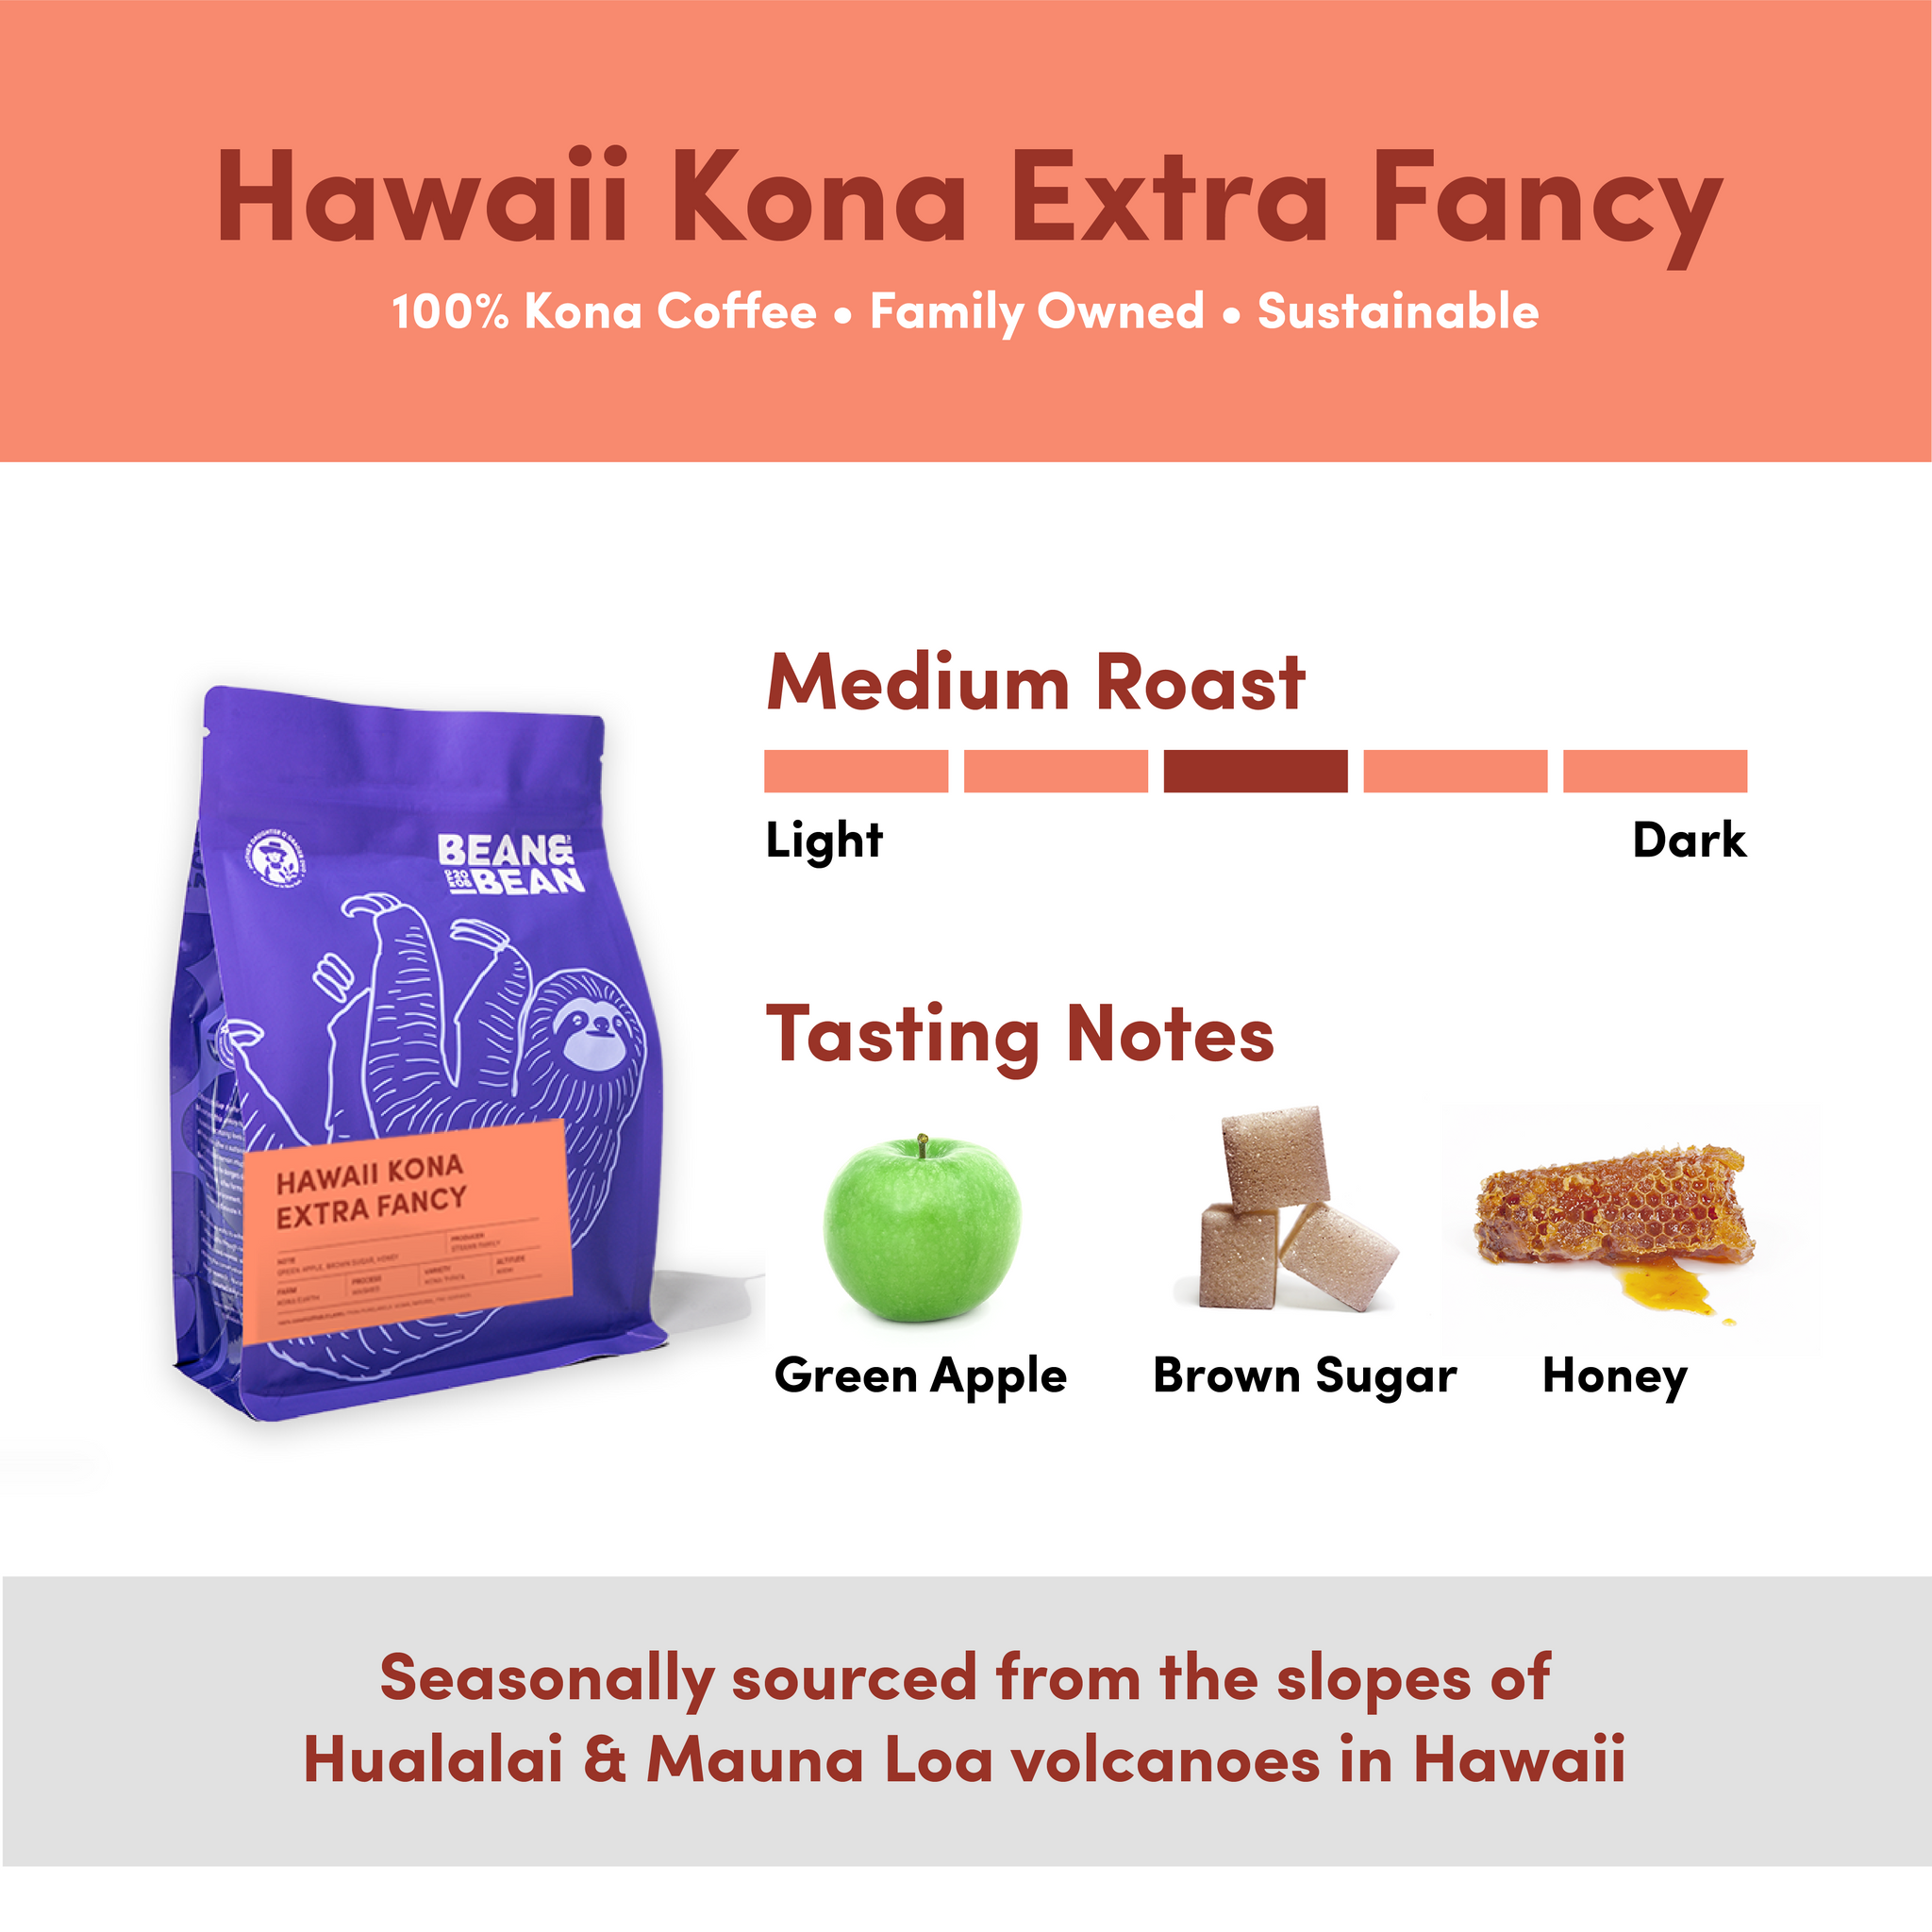 Hawaii Kona Extra Fancy